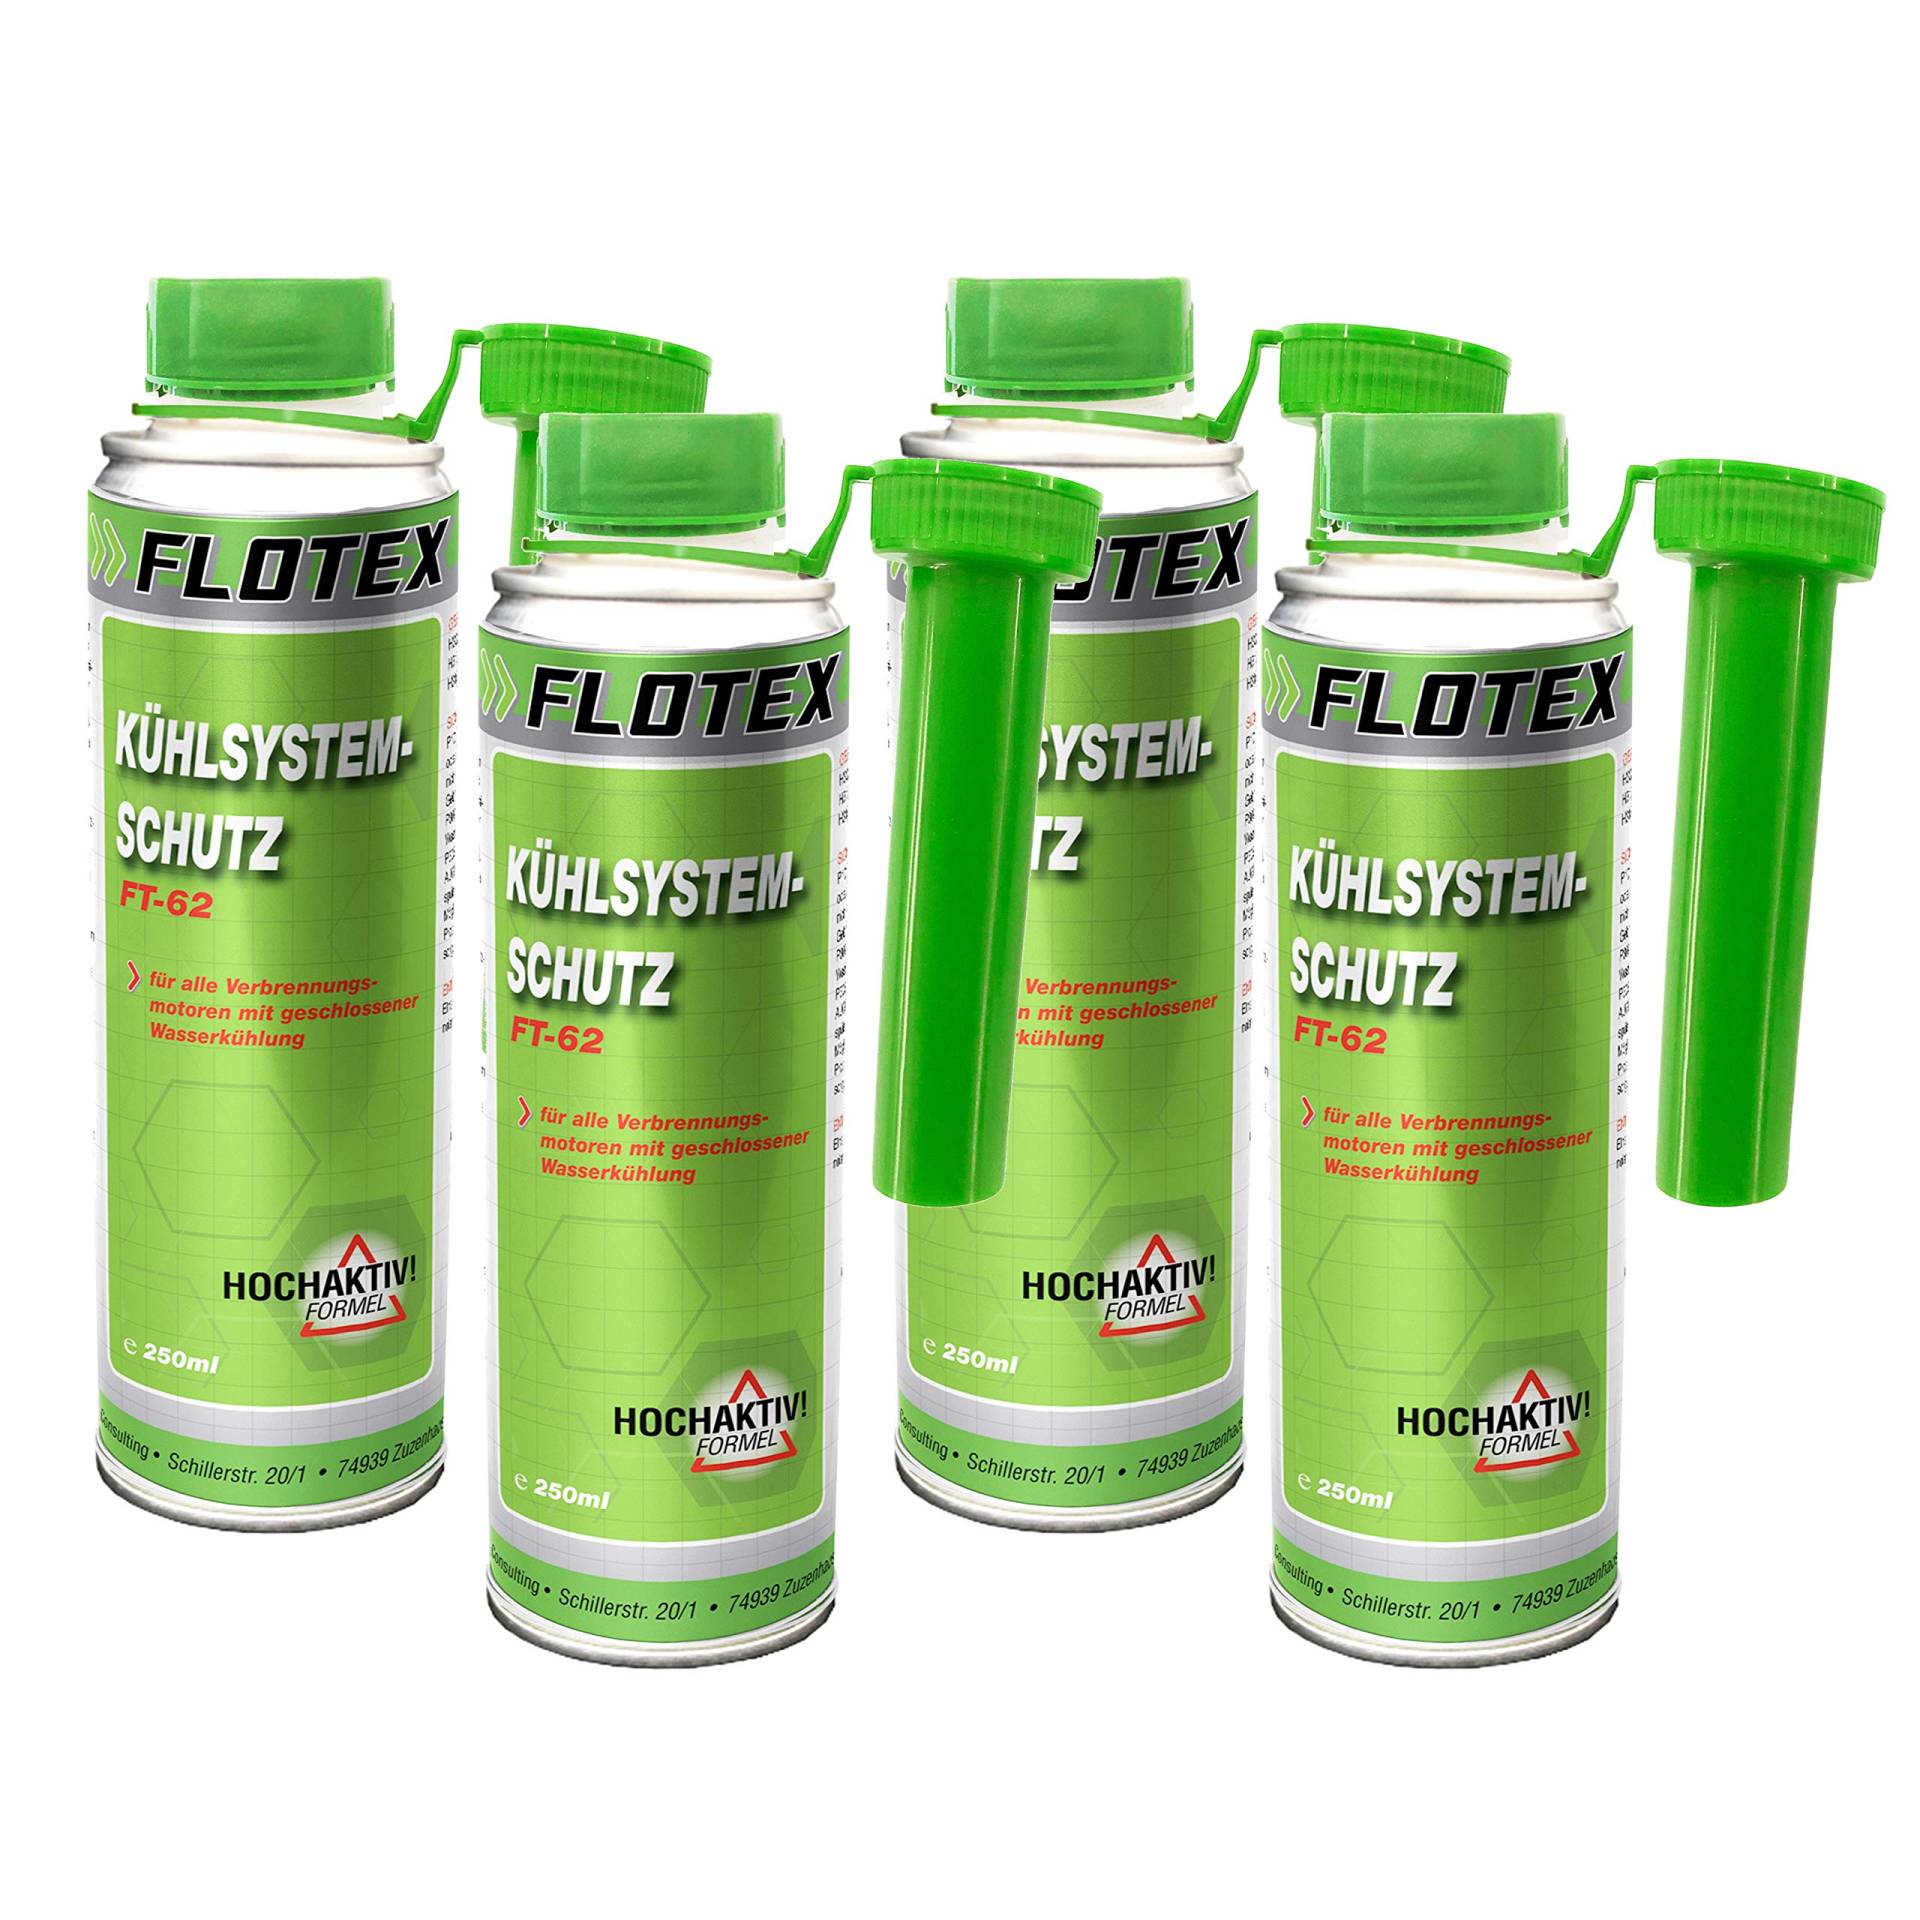 Flotex Kühlsystemschutz, 4 x 250ml Additiv Kühlerschutz für Verbrennungsmotoren mit Wasserkühlung von Flotex